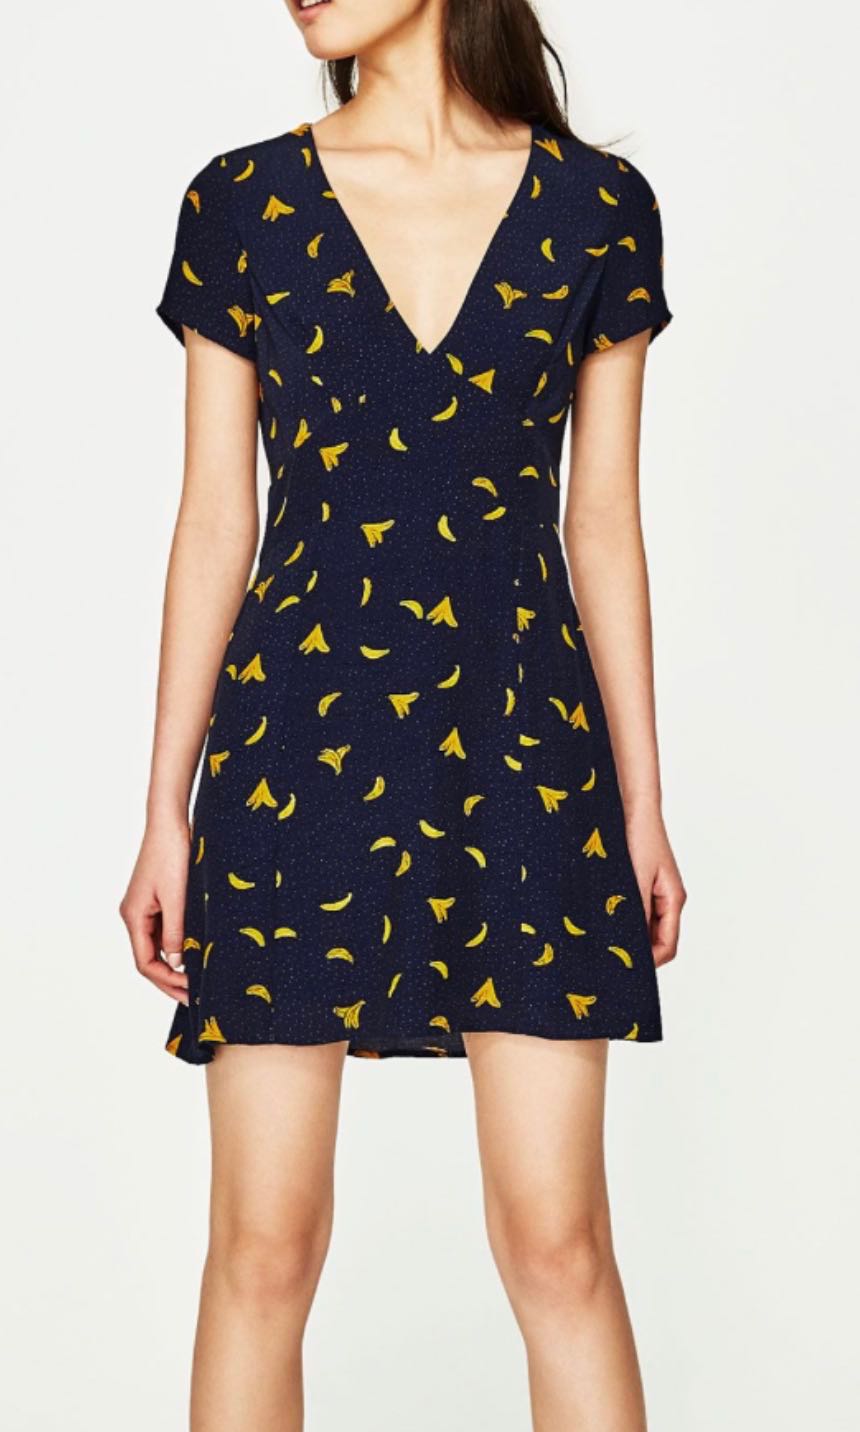 banana print dress zara